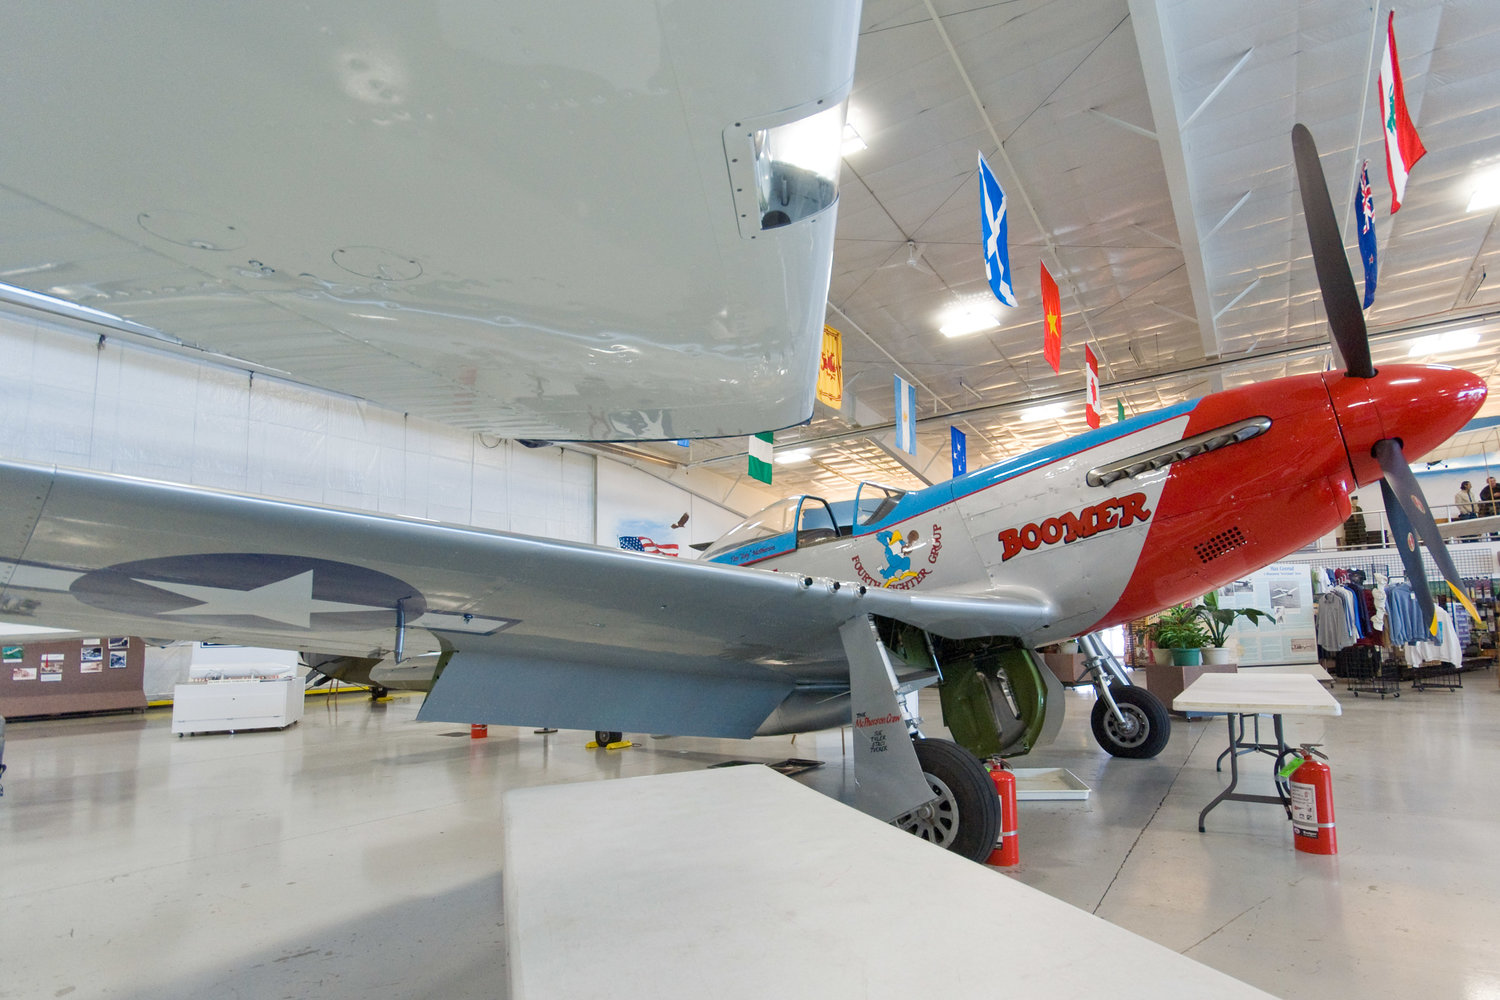 Fargo Air Museum